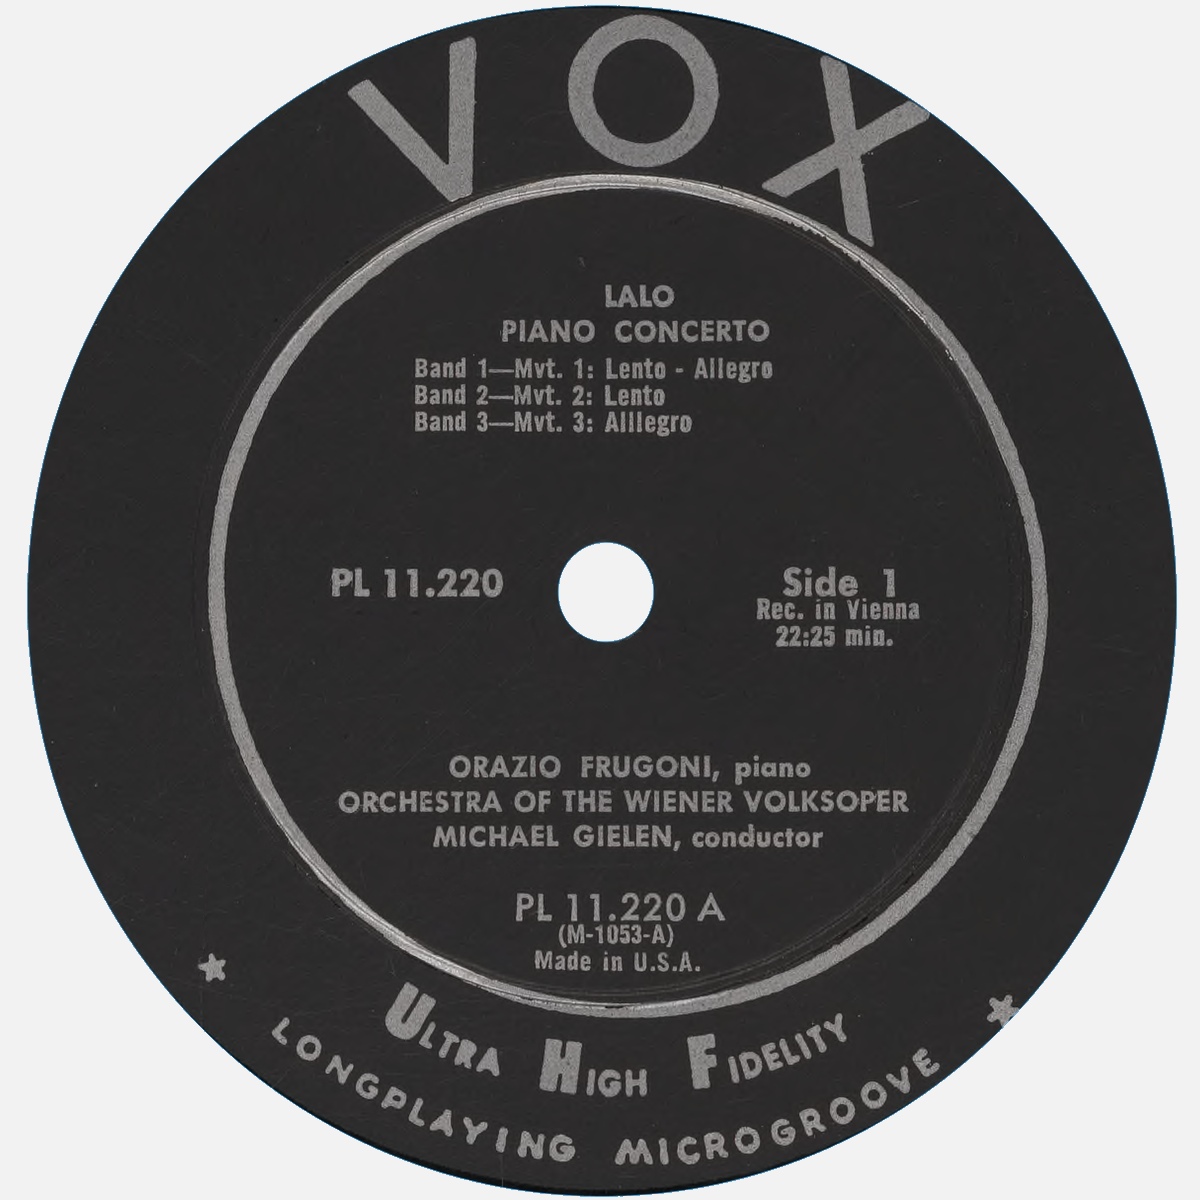 Étiquette recto du disque VOX PL 11.220